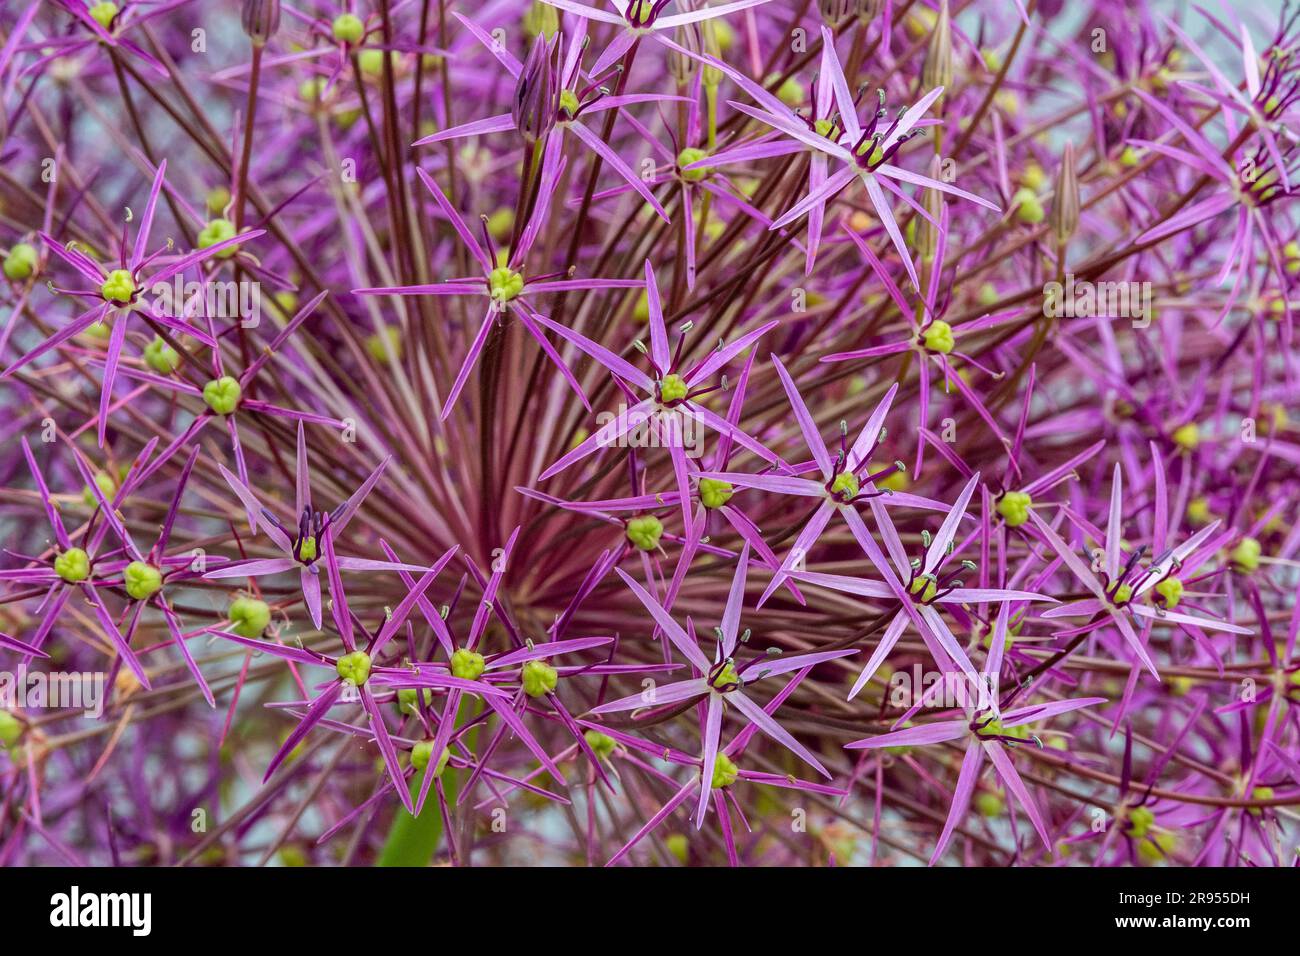 Allium cristophii, die persische Zwiebel oder der Stern von Persien, in einem Garten. Stockfoto